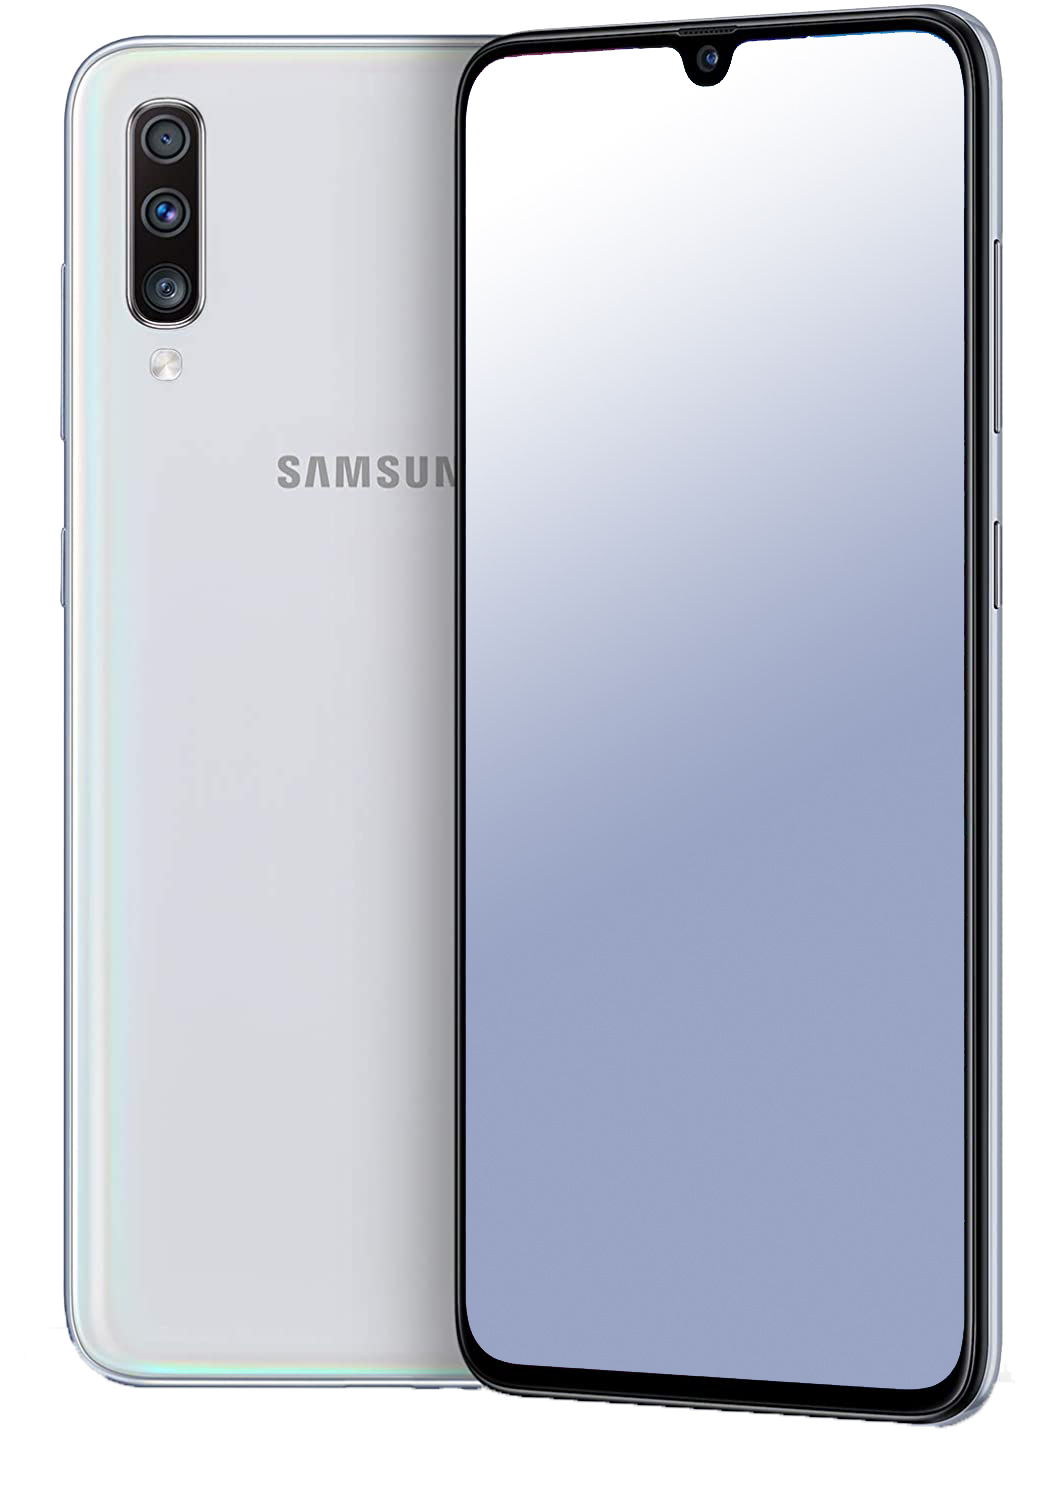 Samsung Galaxy A70 Dual-SIM weiß - Ohne Vertrag